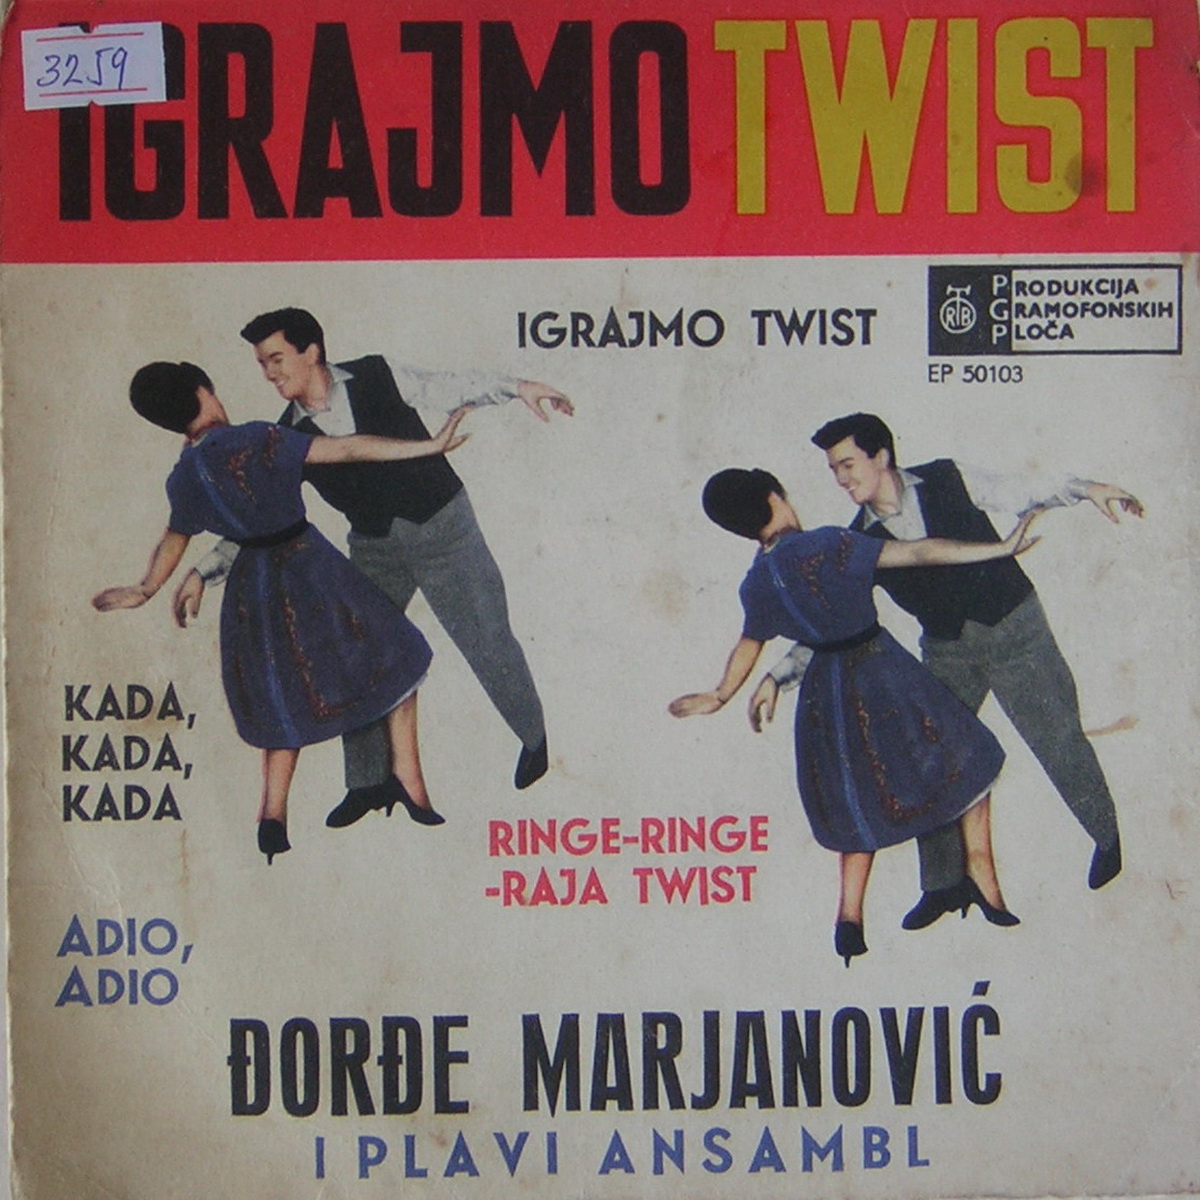 Djordje Marjanovic 1962 Igrajmo twist a